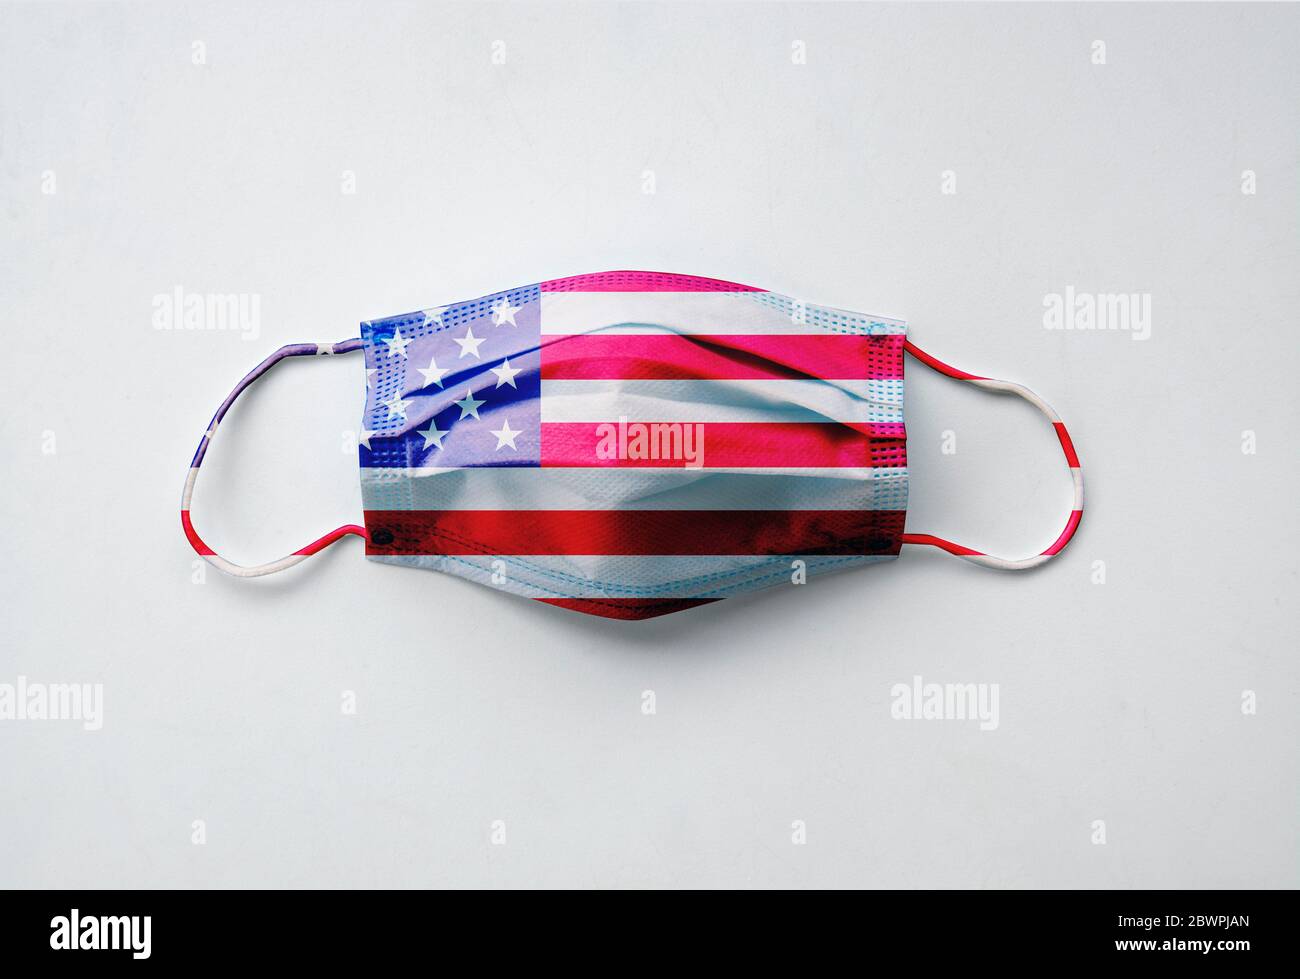 Fotografia della maschera protettiva con il disegno della bandiera americana su sfondo bianco Foto Stock